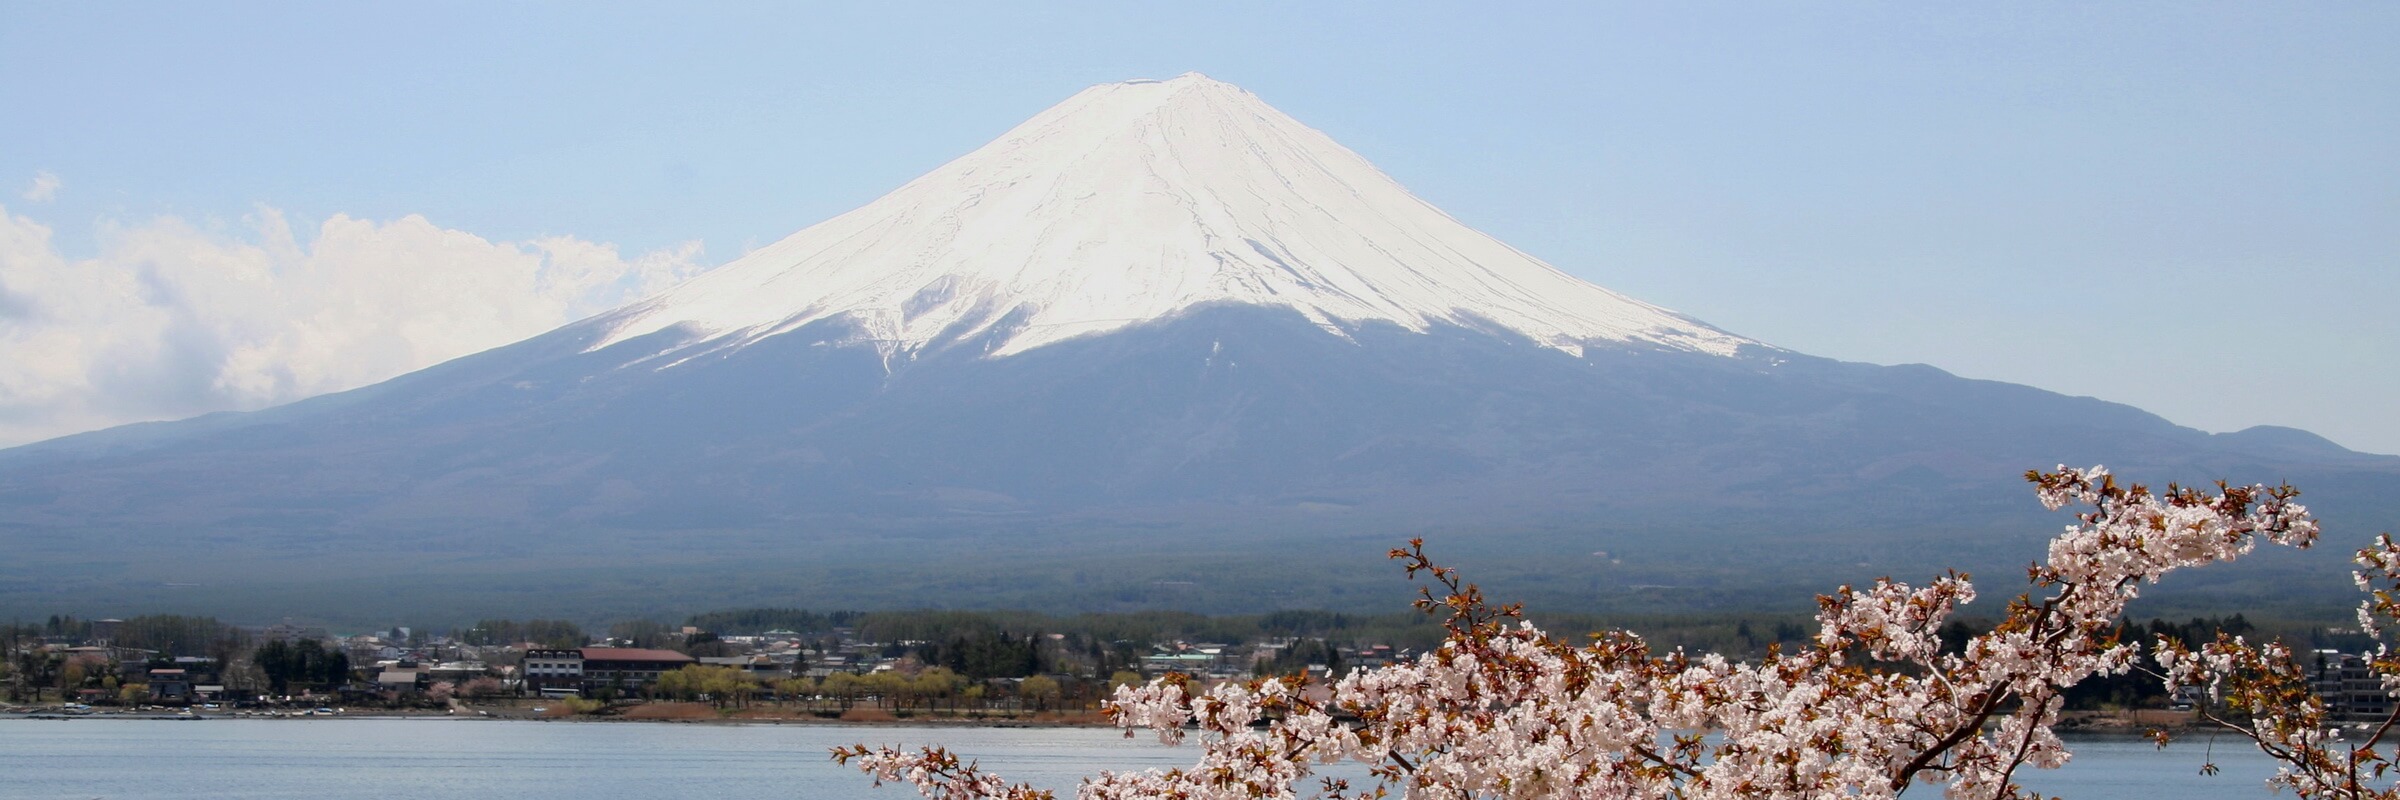 Majestätischer Blick auf den Mount Fuji bei Japans Kirschblüte, der besten Reisezeit für Japan Reisen